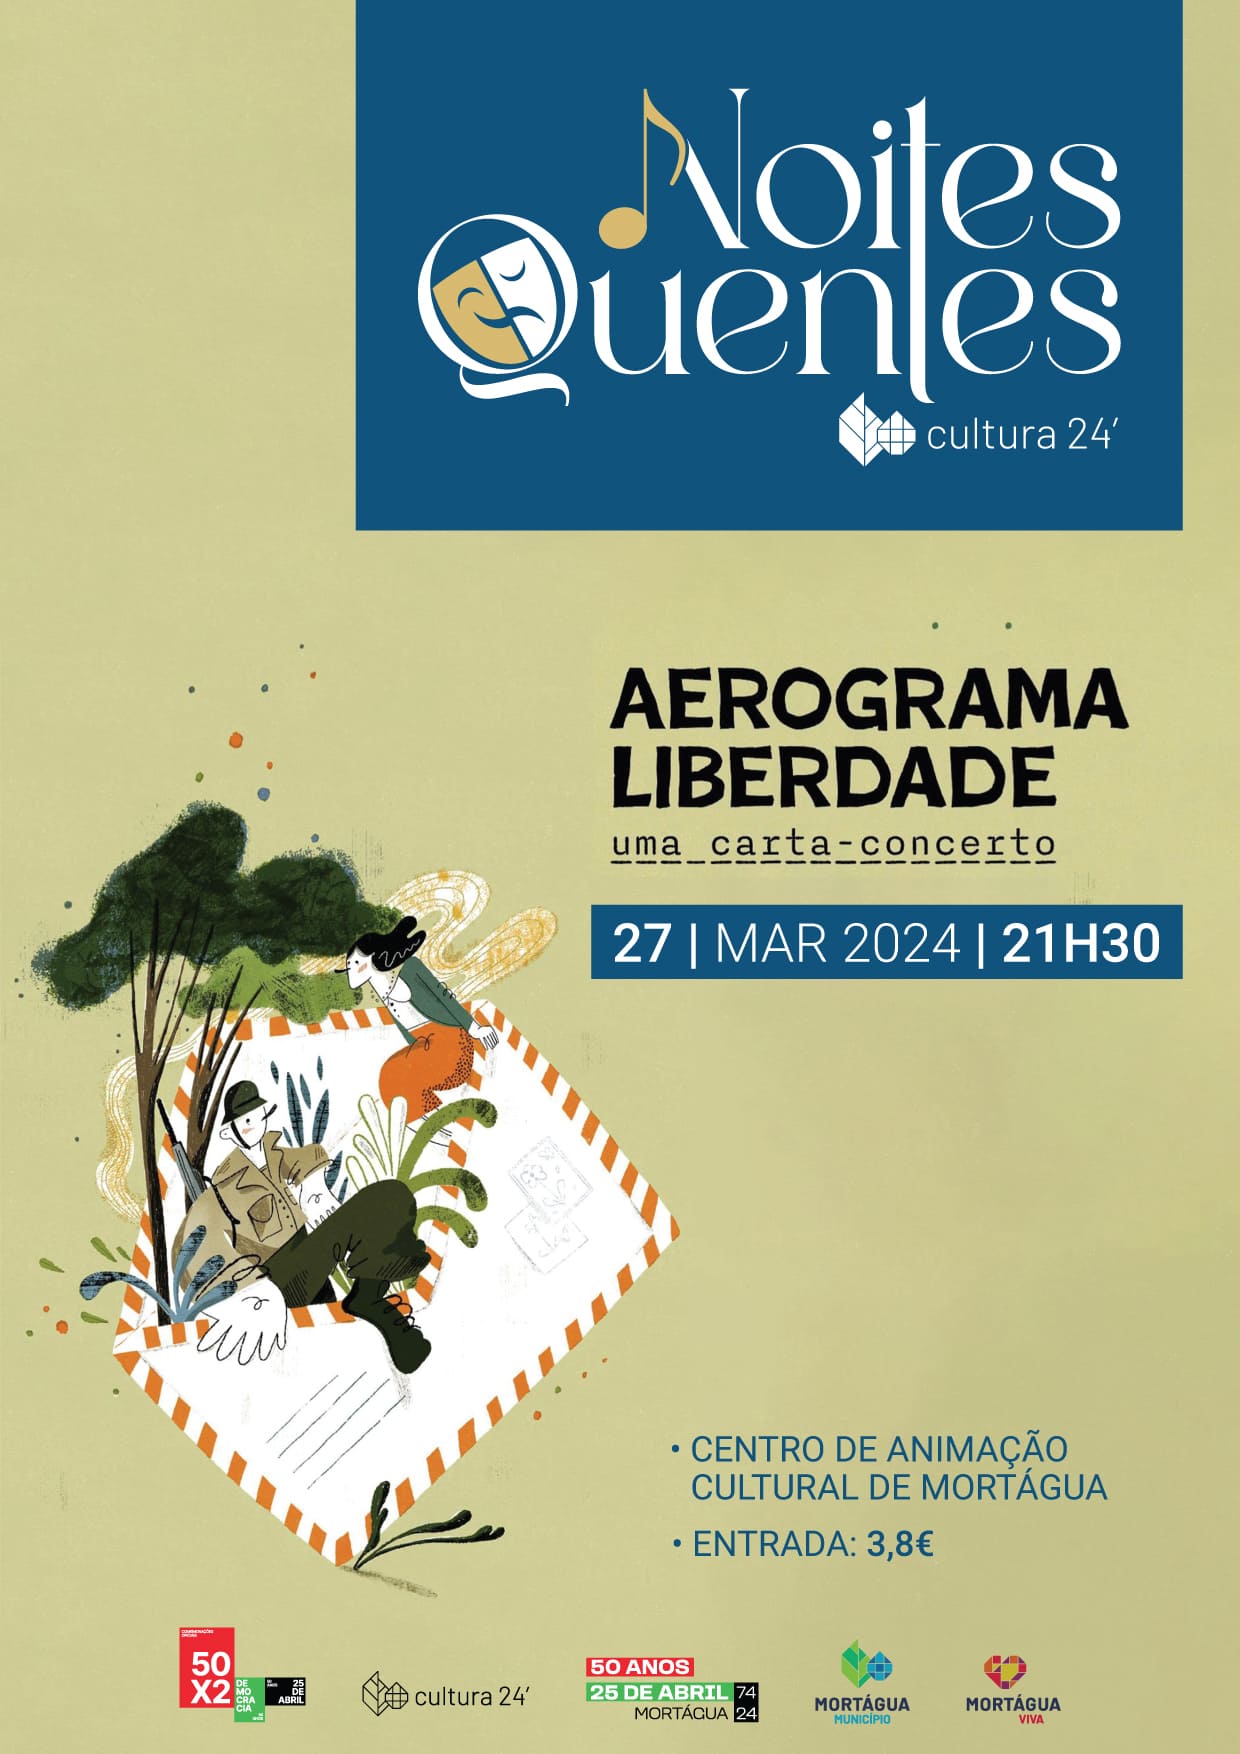 Capa Oficial do Evento Aerograma da Liberdade 